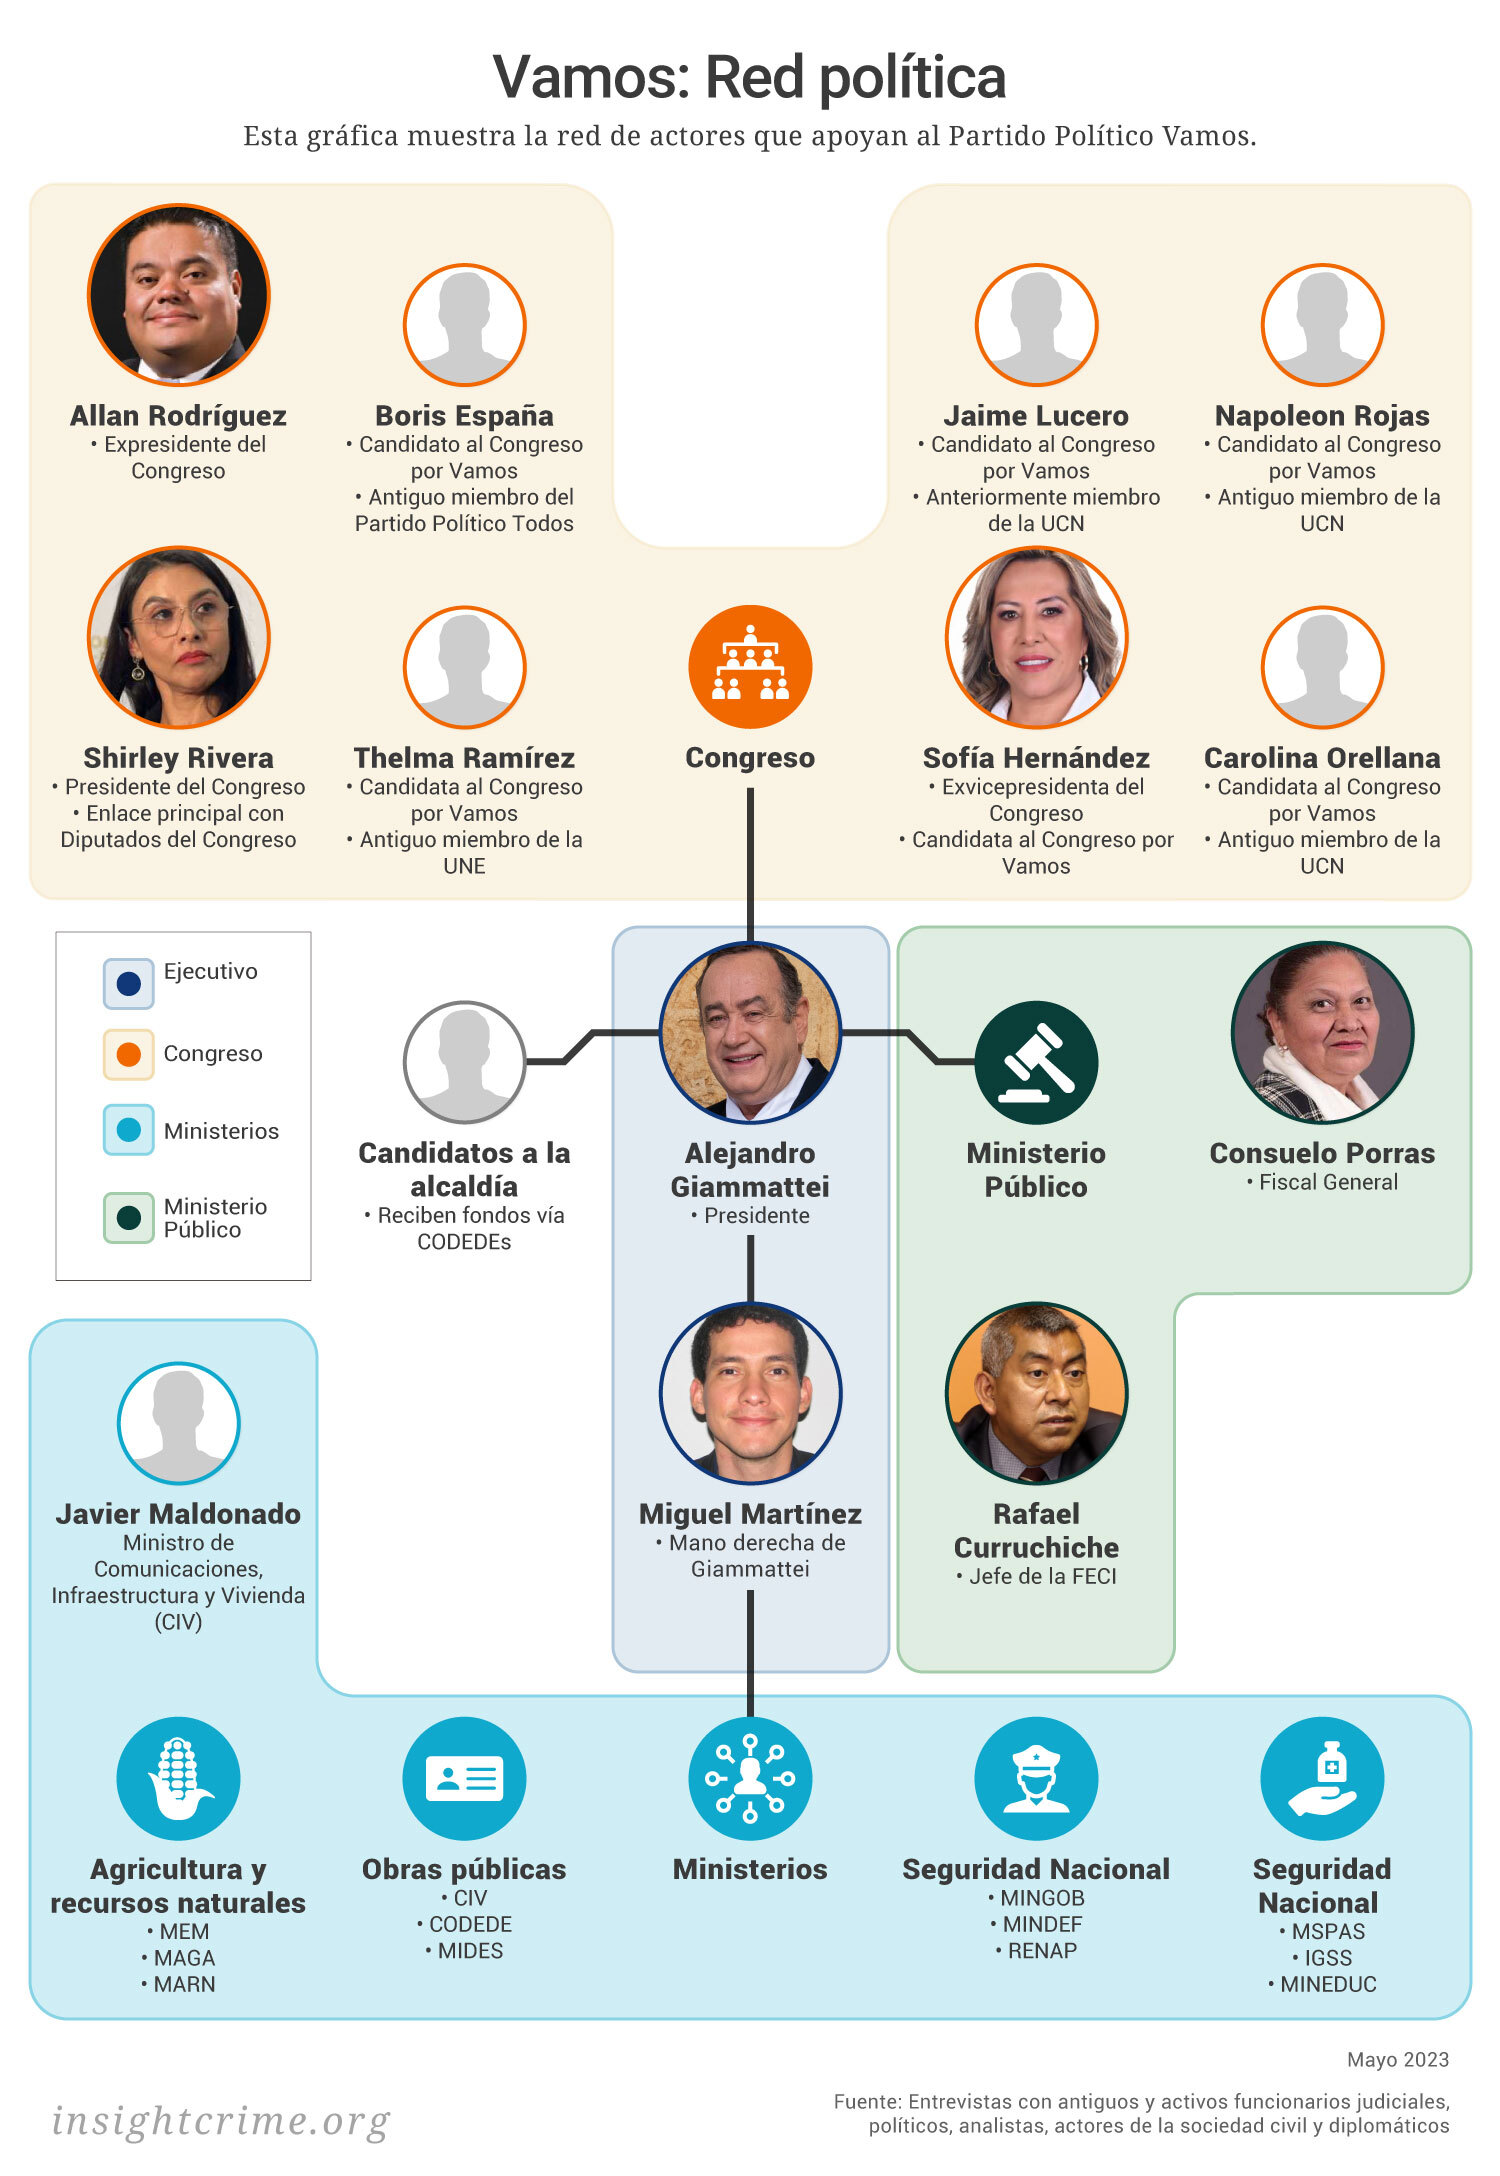 Este gráfico muestra la red de actores políticos que hay alrededor del partido Vamos en Guatemala.